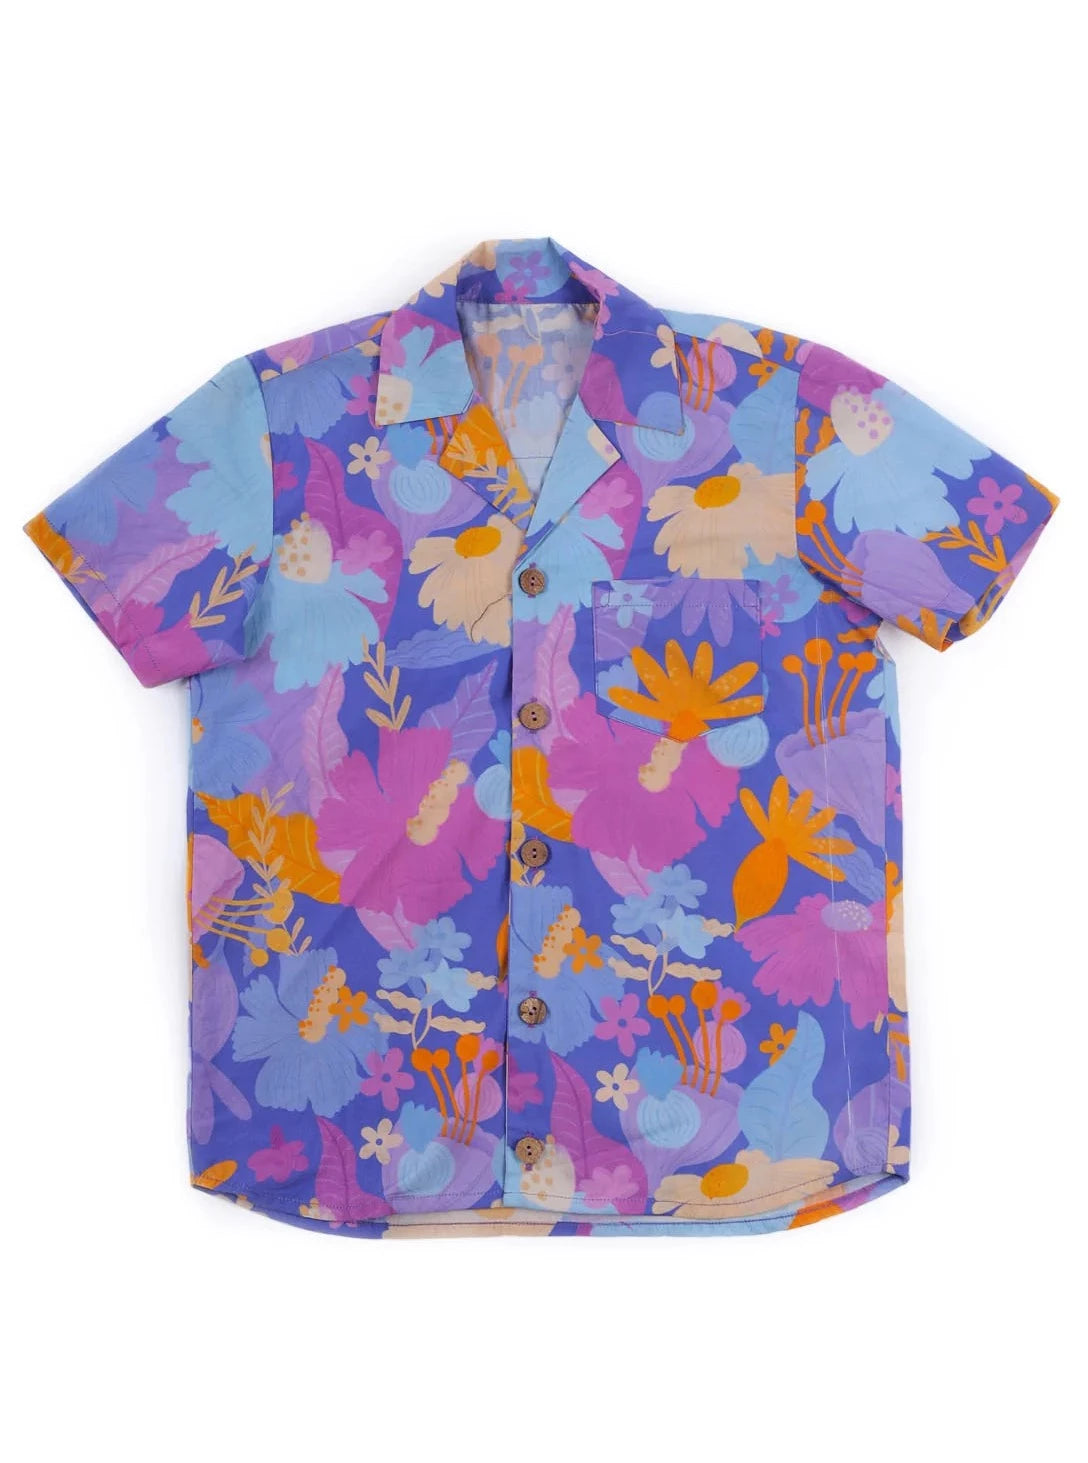 MIKO LOLO Daffy Hawaiian Summer Shirt in Organic Cotton